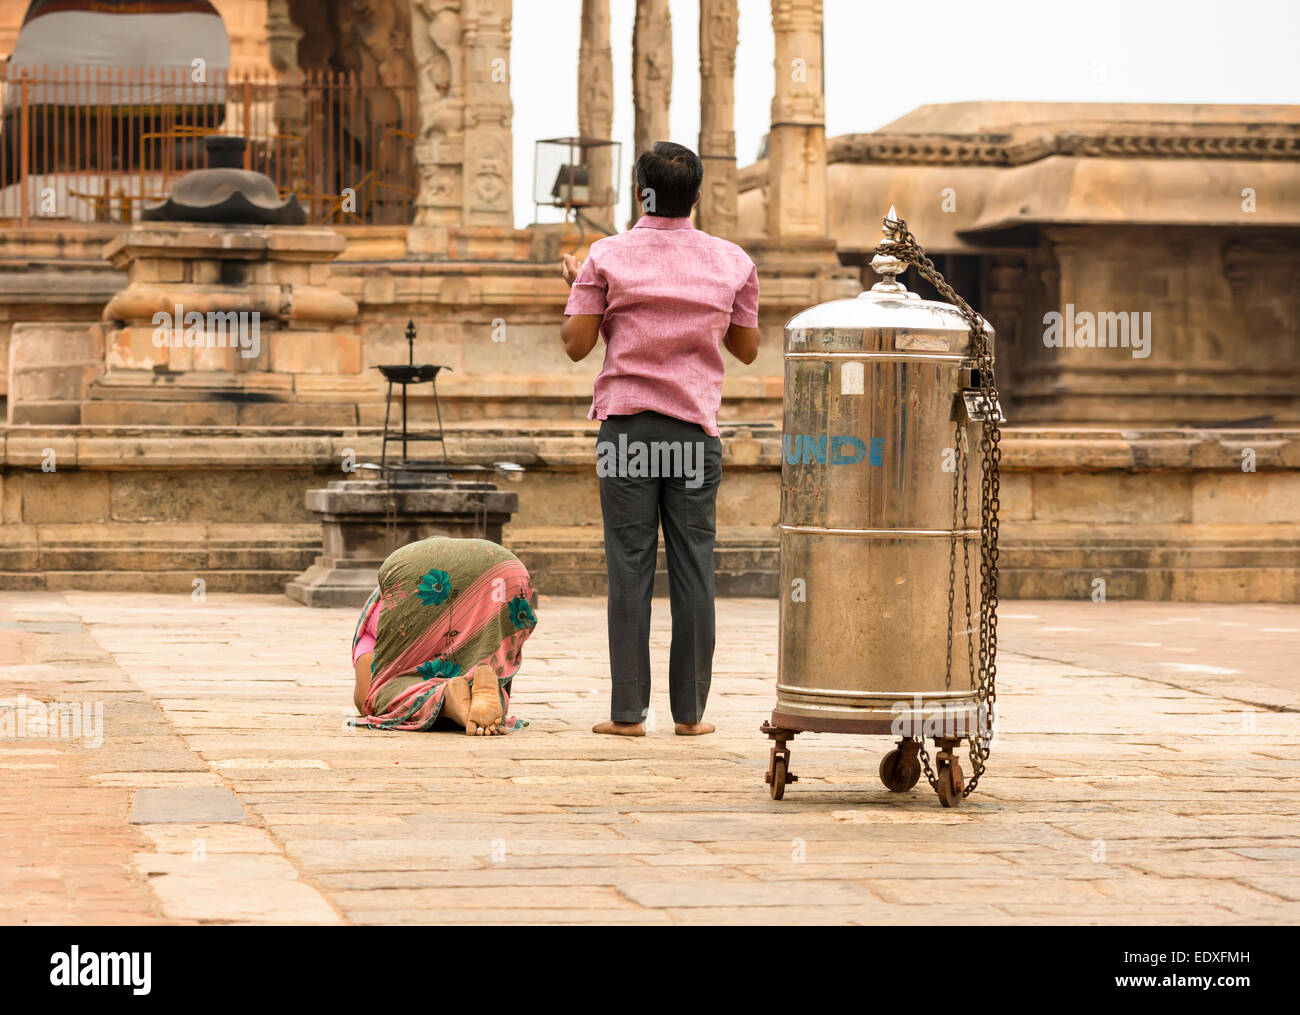 THANJAVUR, India - 14 febbraio: Indian l uomo e la donna che prega al tempio Brihadishwara. India, nello Stato del Tamil Nadu, Thanjavur. Febbraio 14, Foto Stock